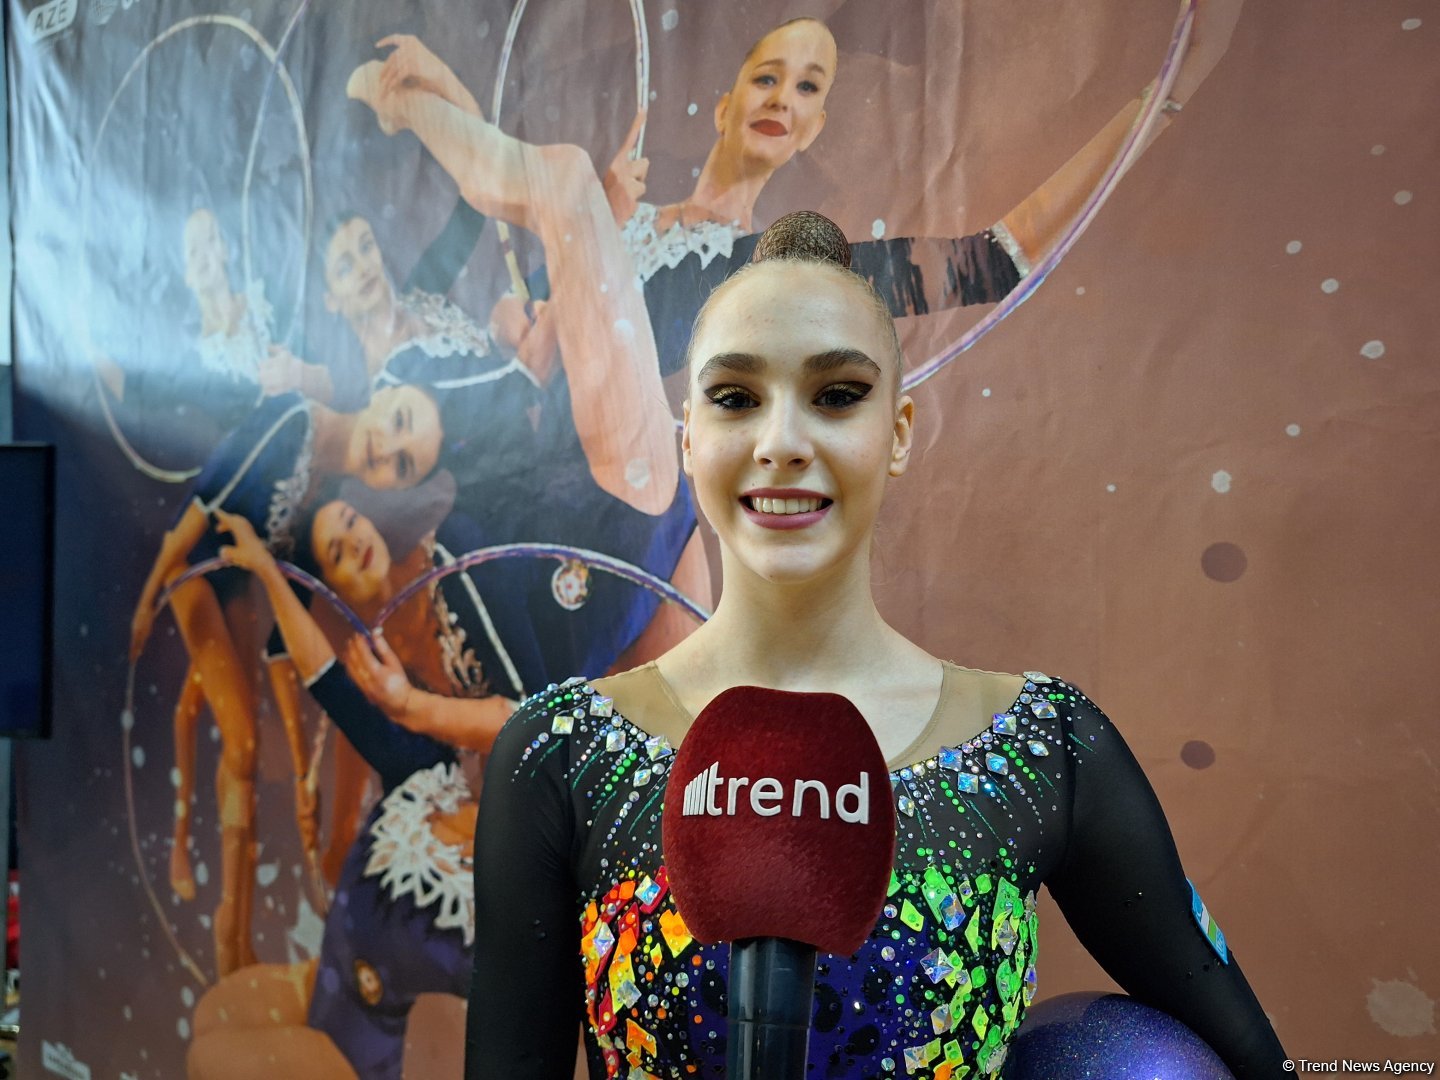 В Национальной арене гимнастики в Баку чувствую себя комфортно – спортсменка из Узбекистана